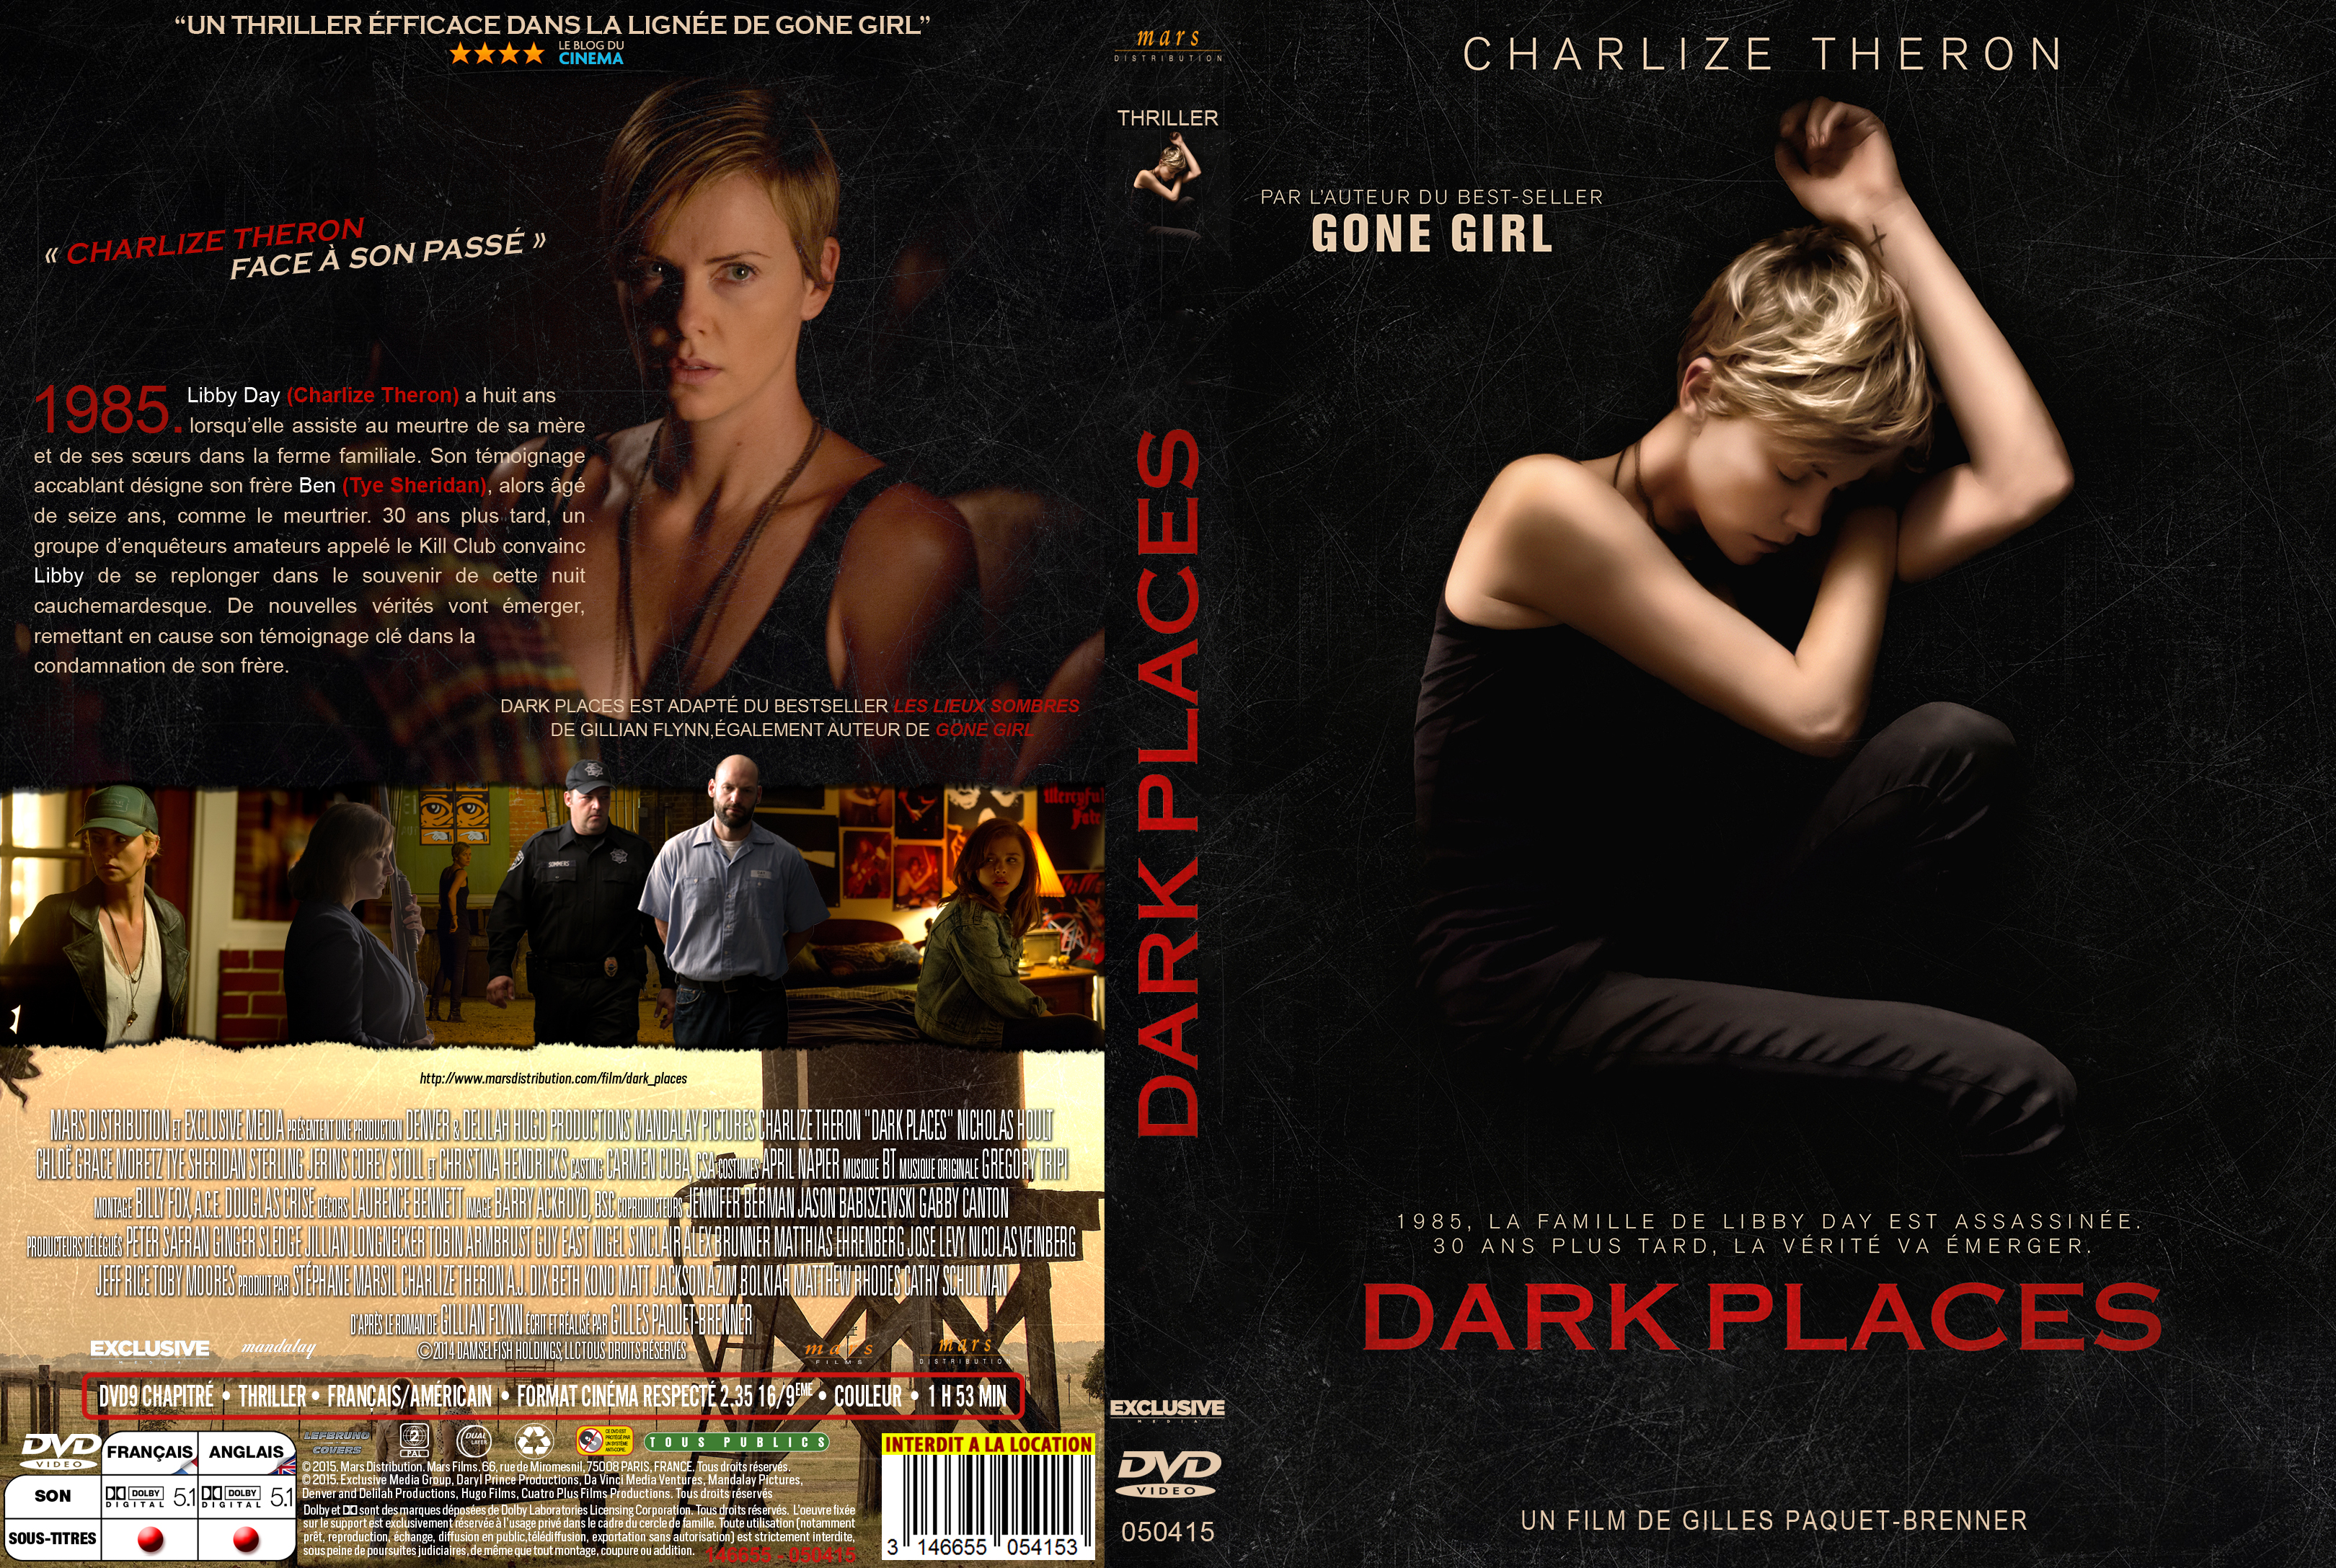 Jaquette DVD Dark Places custom